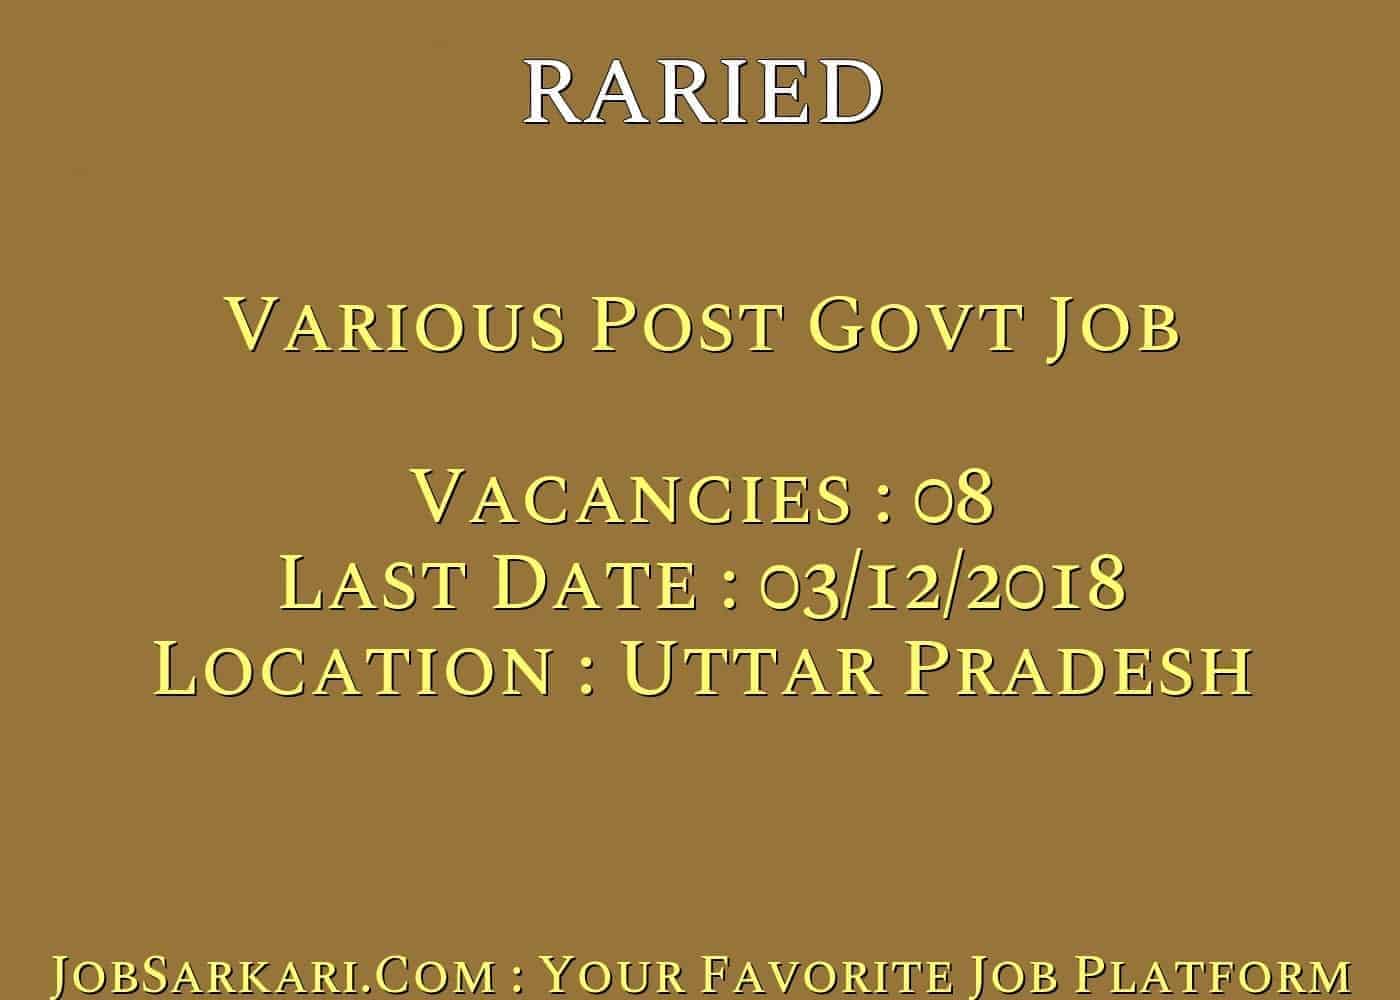 RARIED Recruitment 2018 For Various Post Govt Job